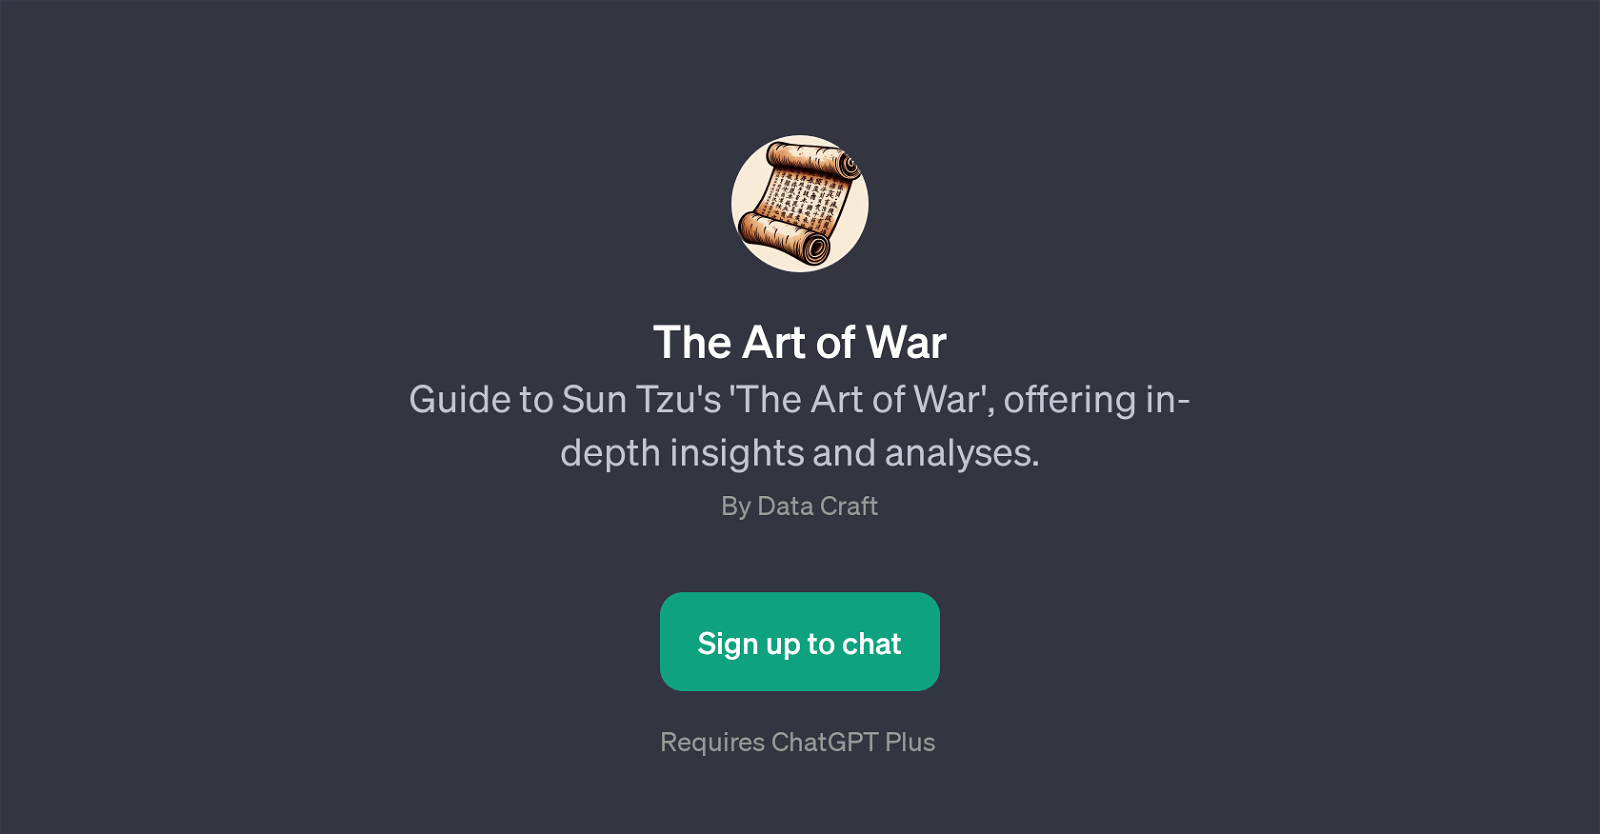 The Art of War website